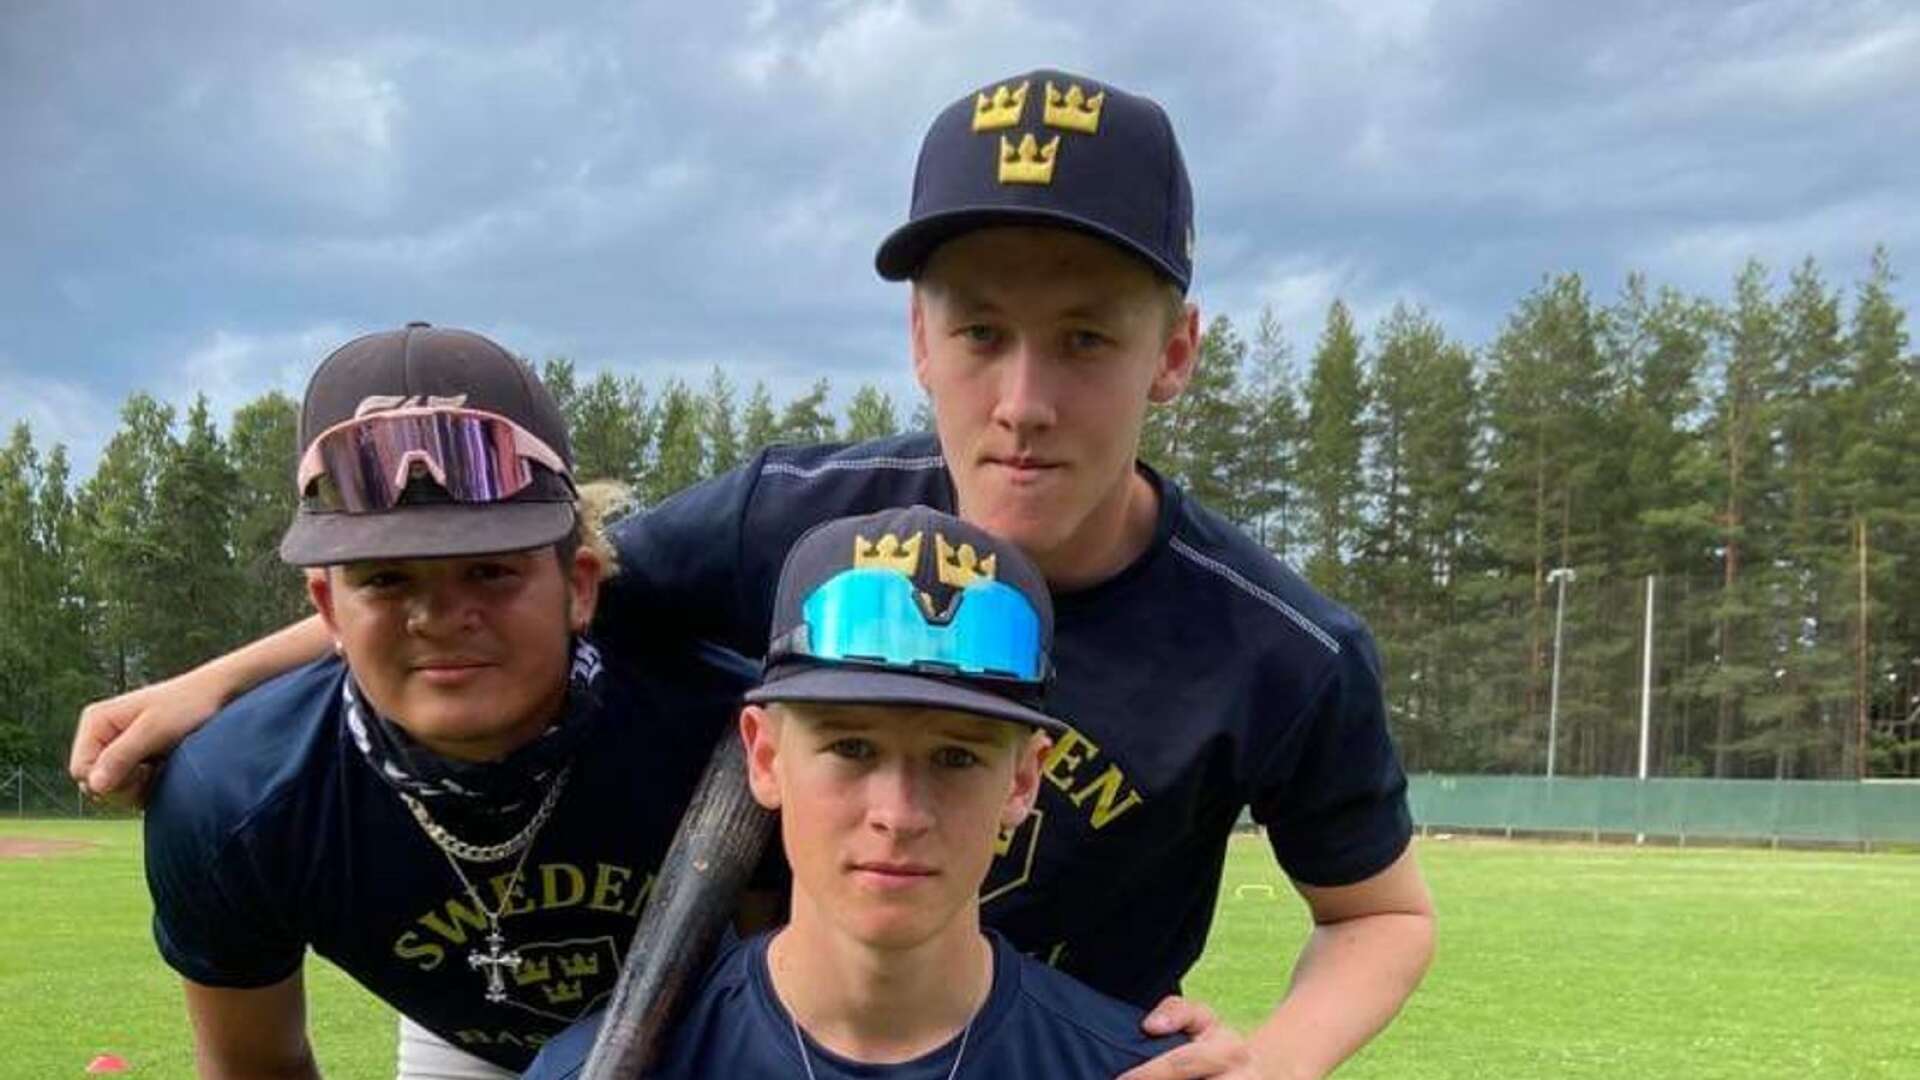 Tre av fyra juniorlandslagsspelare från Karlskoga Bats. Stående från vänster: Daniel Boox och Oscar Westerlund. Längst fram: Gustav Öijen. Jakob Lindkvist saknas på bilden.